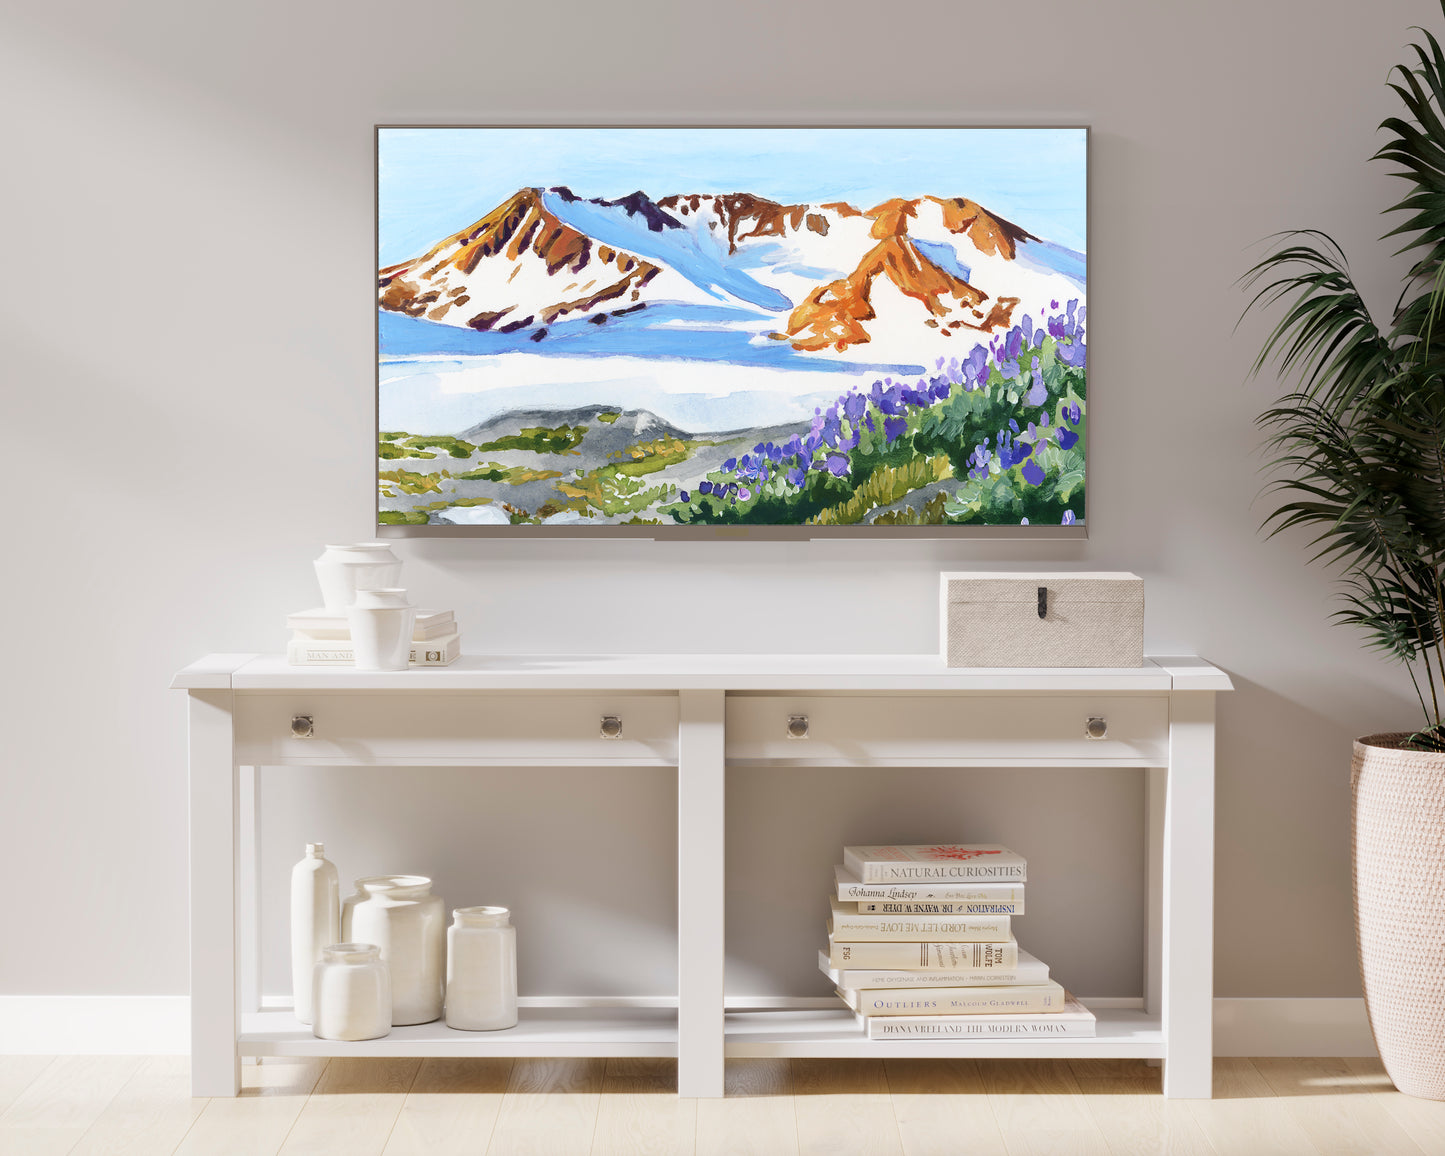 Kenai Fjords National Park - digital download for Samsung TV Frame